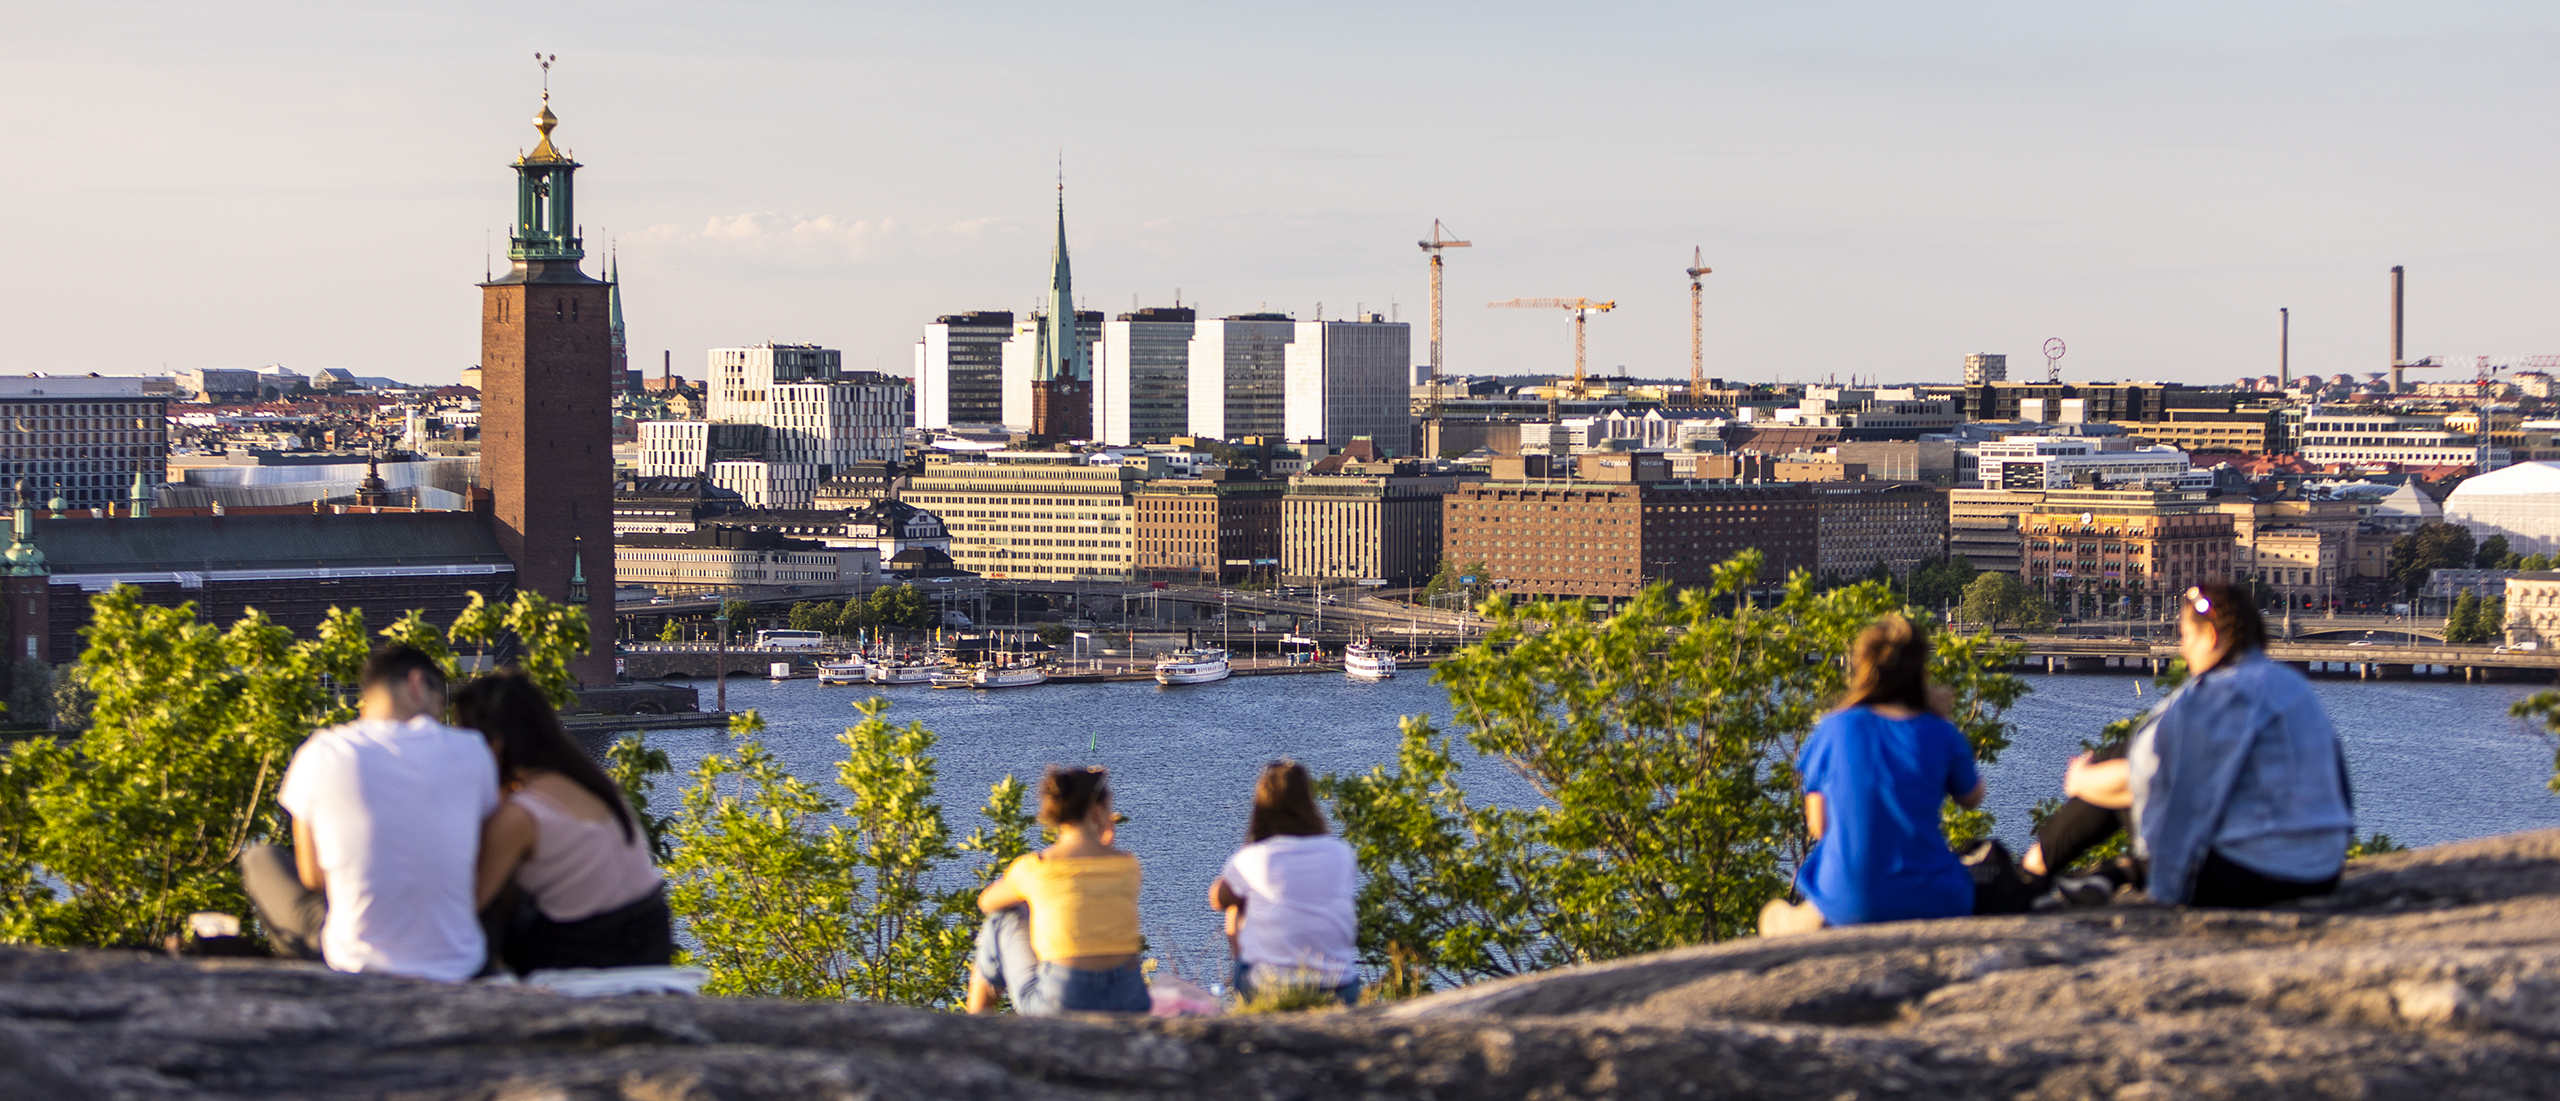 Det är sommar och några människor sitter på Skinnarviksberget och tittar på utsikten mot Stockholms stadshus och city.